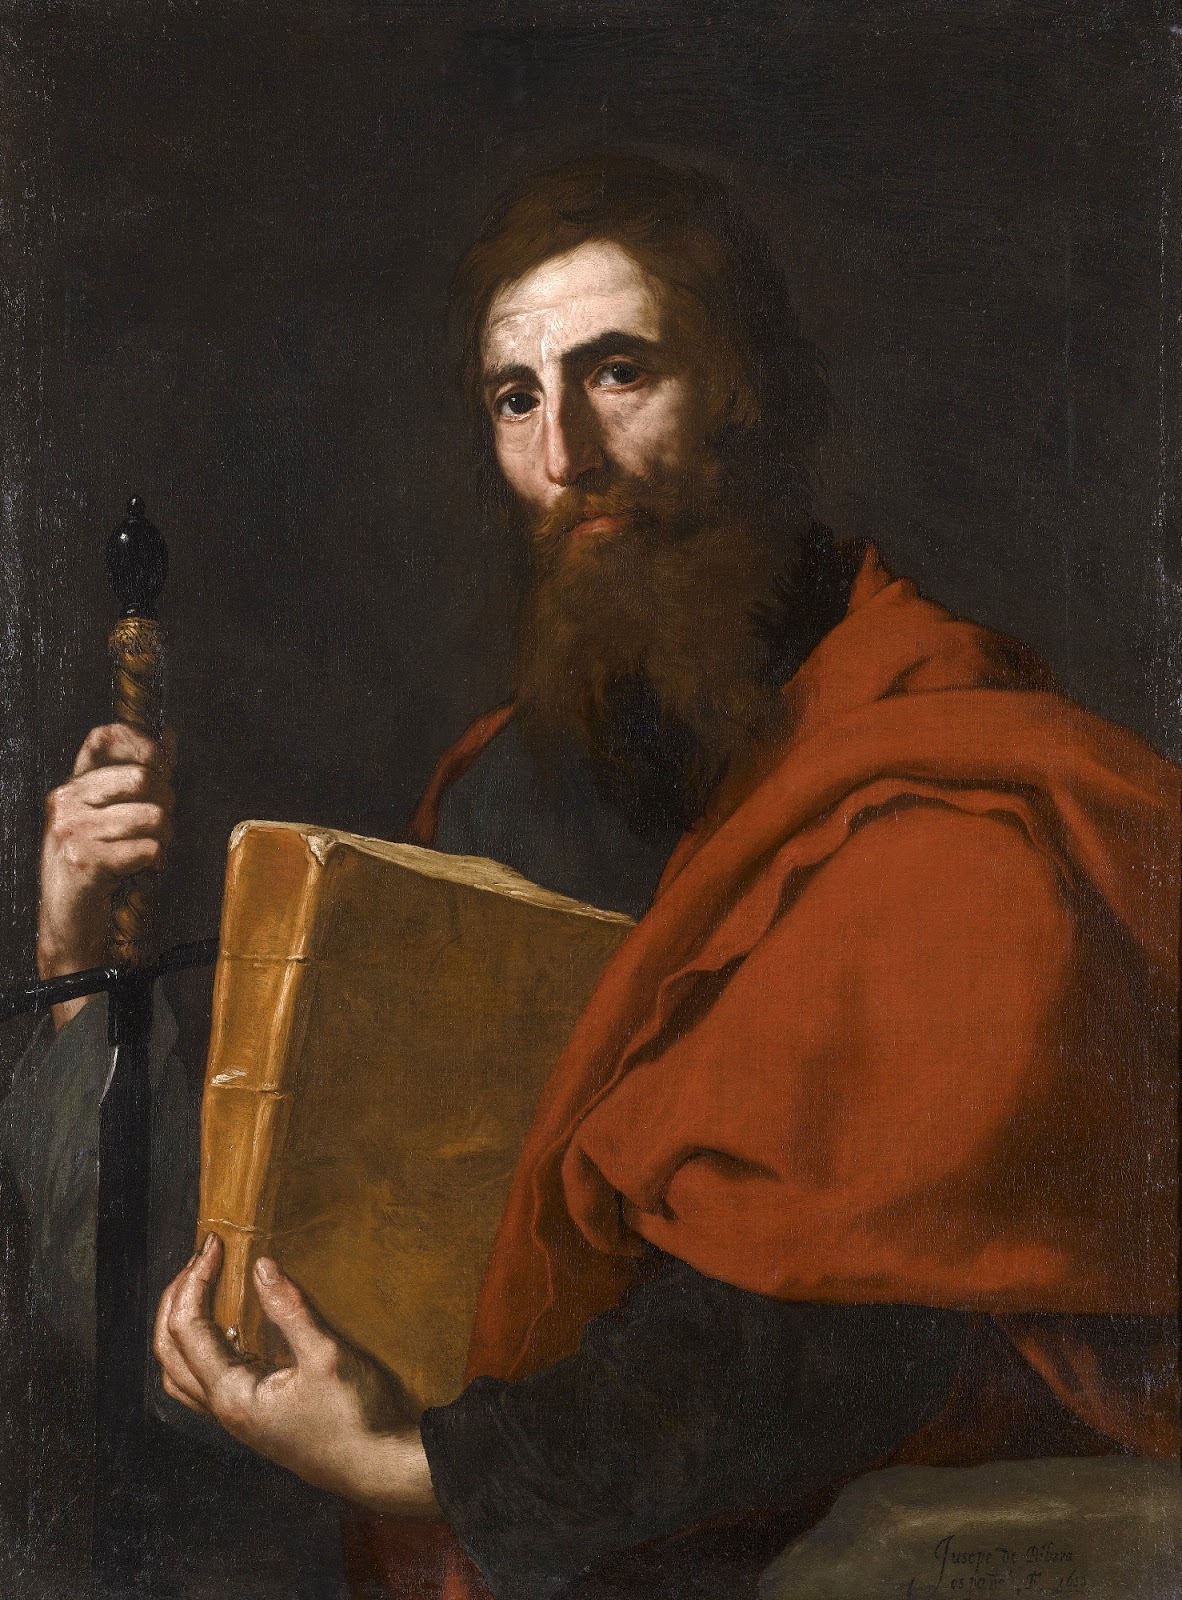 Jusepe+de+Ribera-1591-1652 (80).jpg